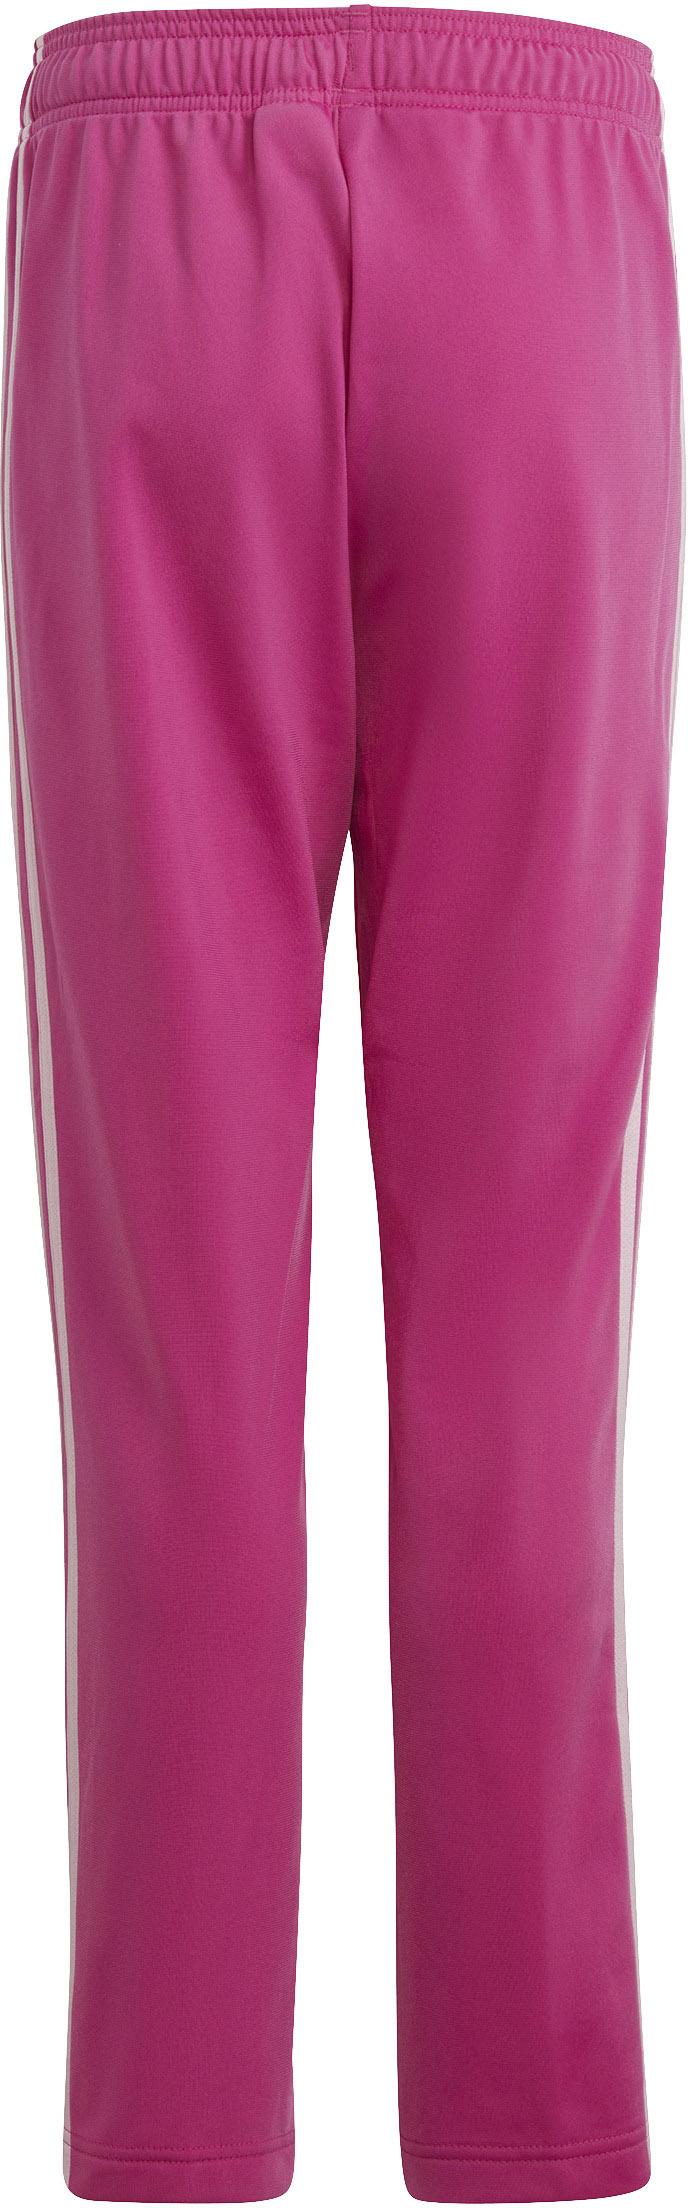 Adidas Trainingsanzug Mädchen fuchsia-white SportScheck clear Online Shop pink-semi von im kaufen lucid